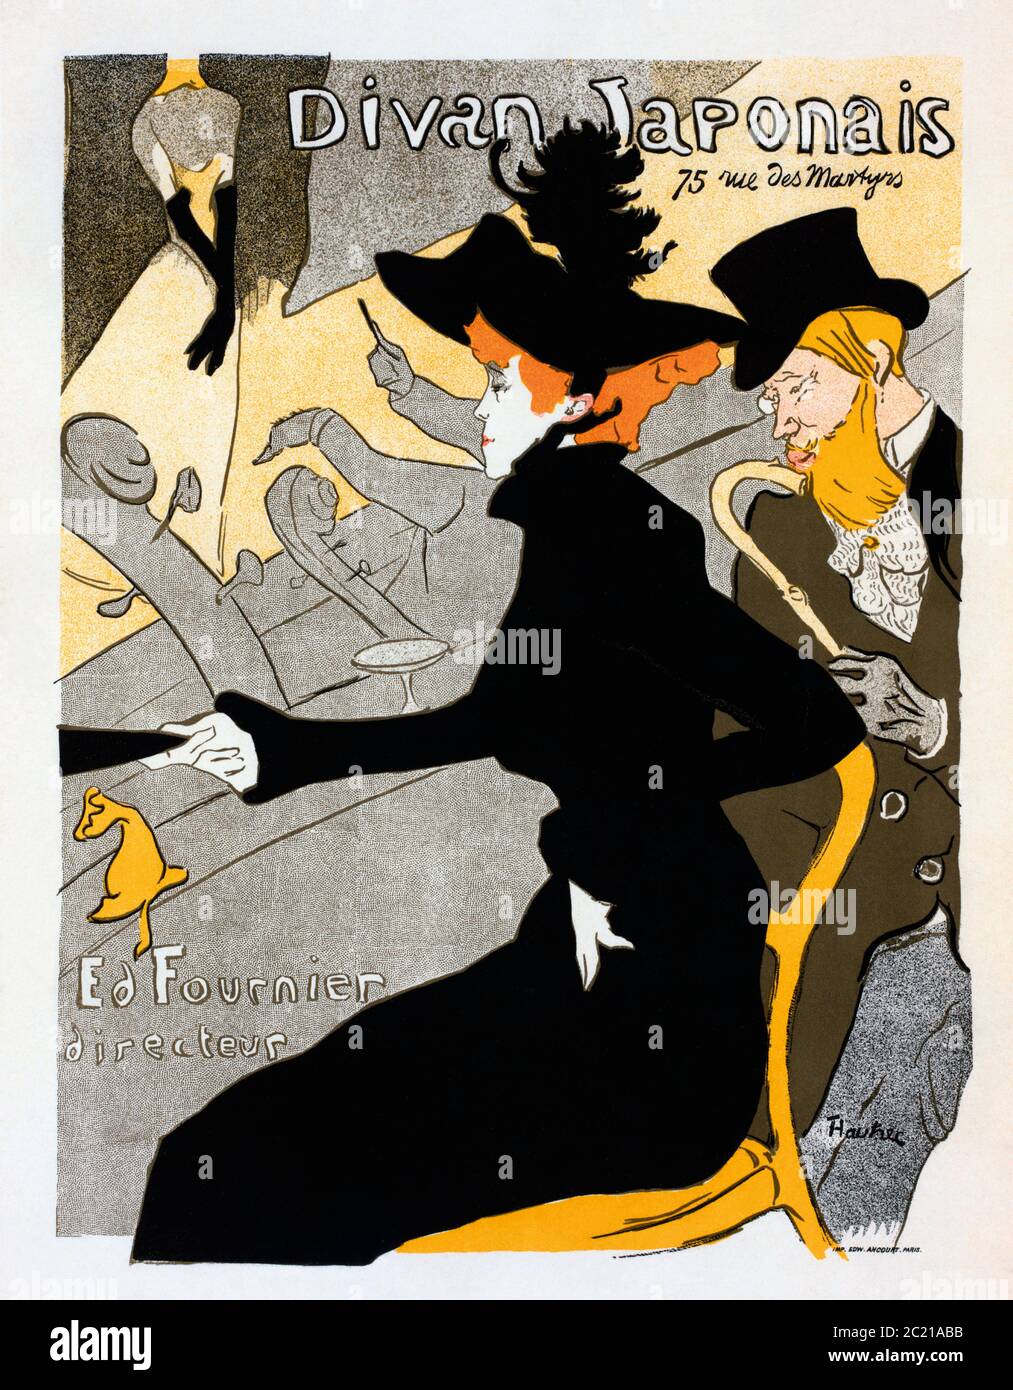 Divan Japonais. Affiche, datée de 1893-1894 par l'artiste français Henri de Toulouse-Lautrec, 1864-1901. L'affiche a été conçue comme une publicité pour le Divan Japonais, un café-chantant parisien. Sur la photo, la danseuse Jane avril et l'auteur Edouard Dujardin regardent une performance d'Yvette Guilbert. Banque D'Images